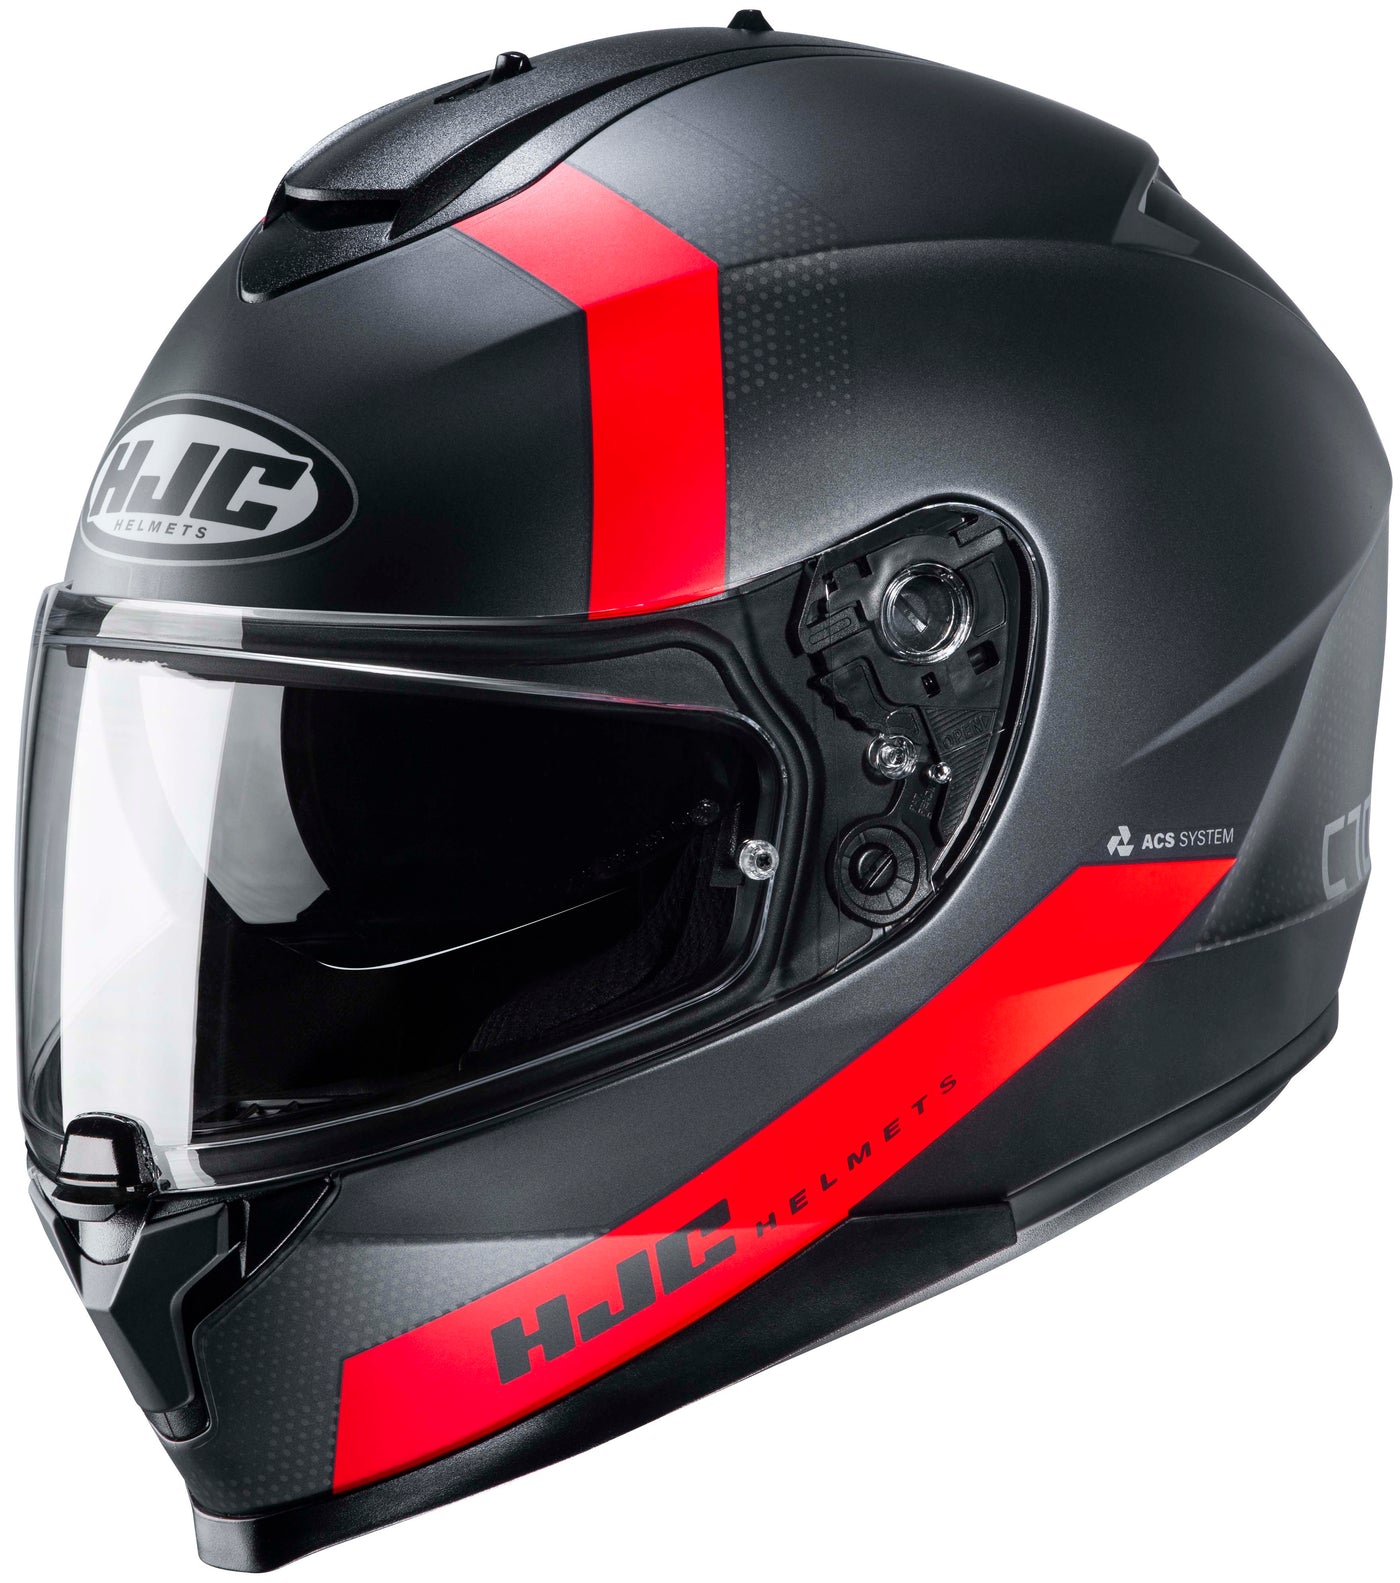 HJC C70 Eura Full Face Motorcycle Helmet